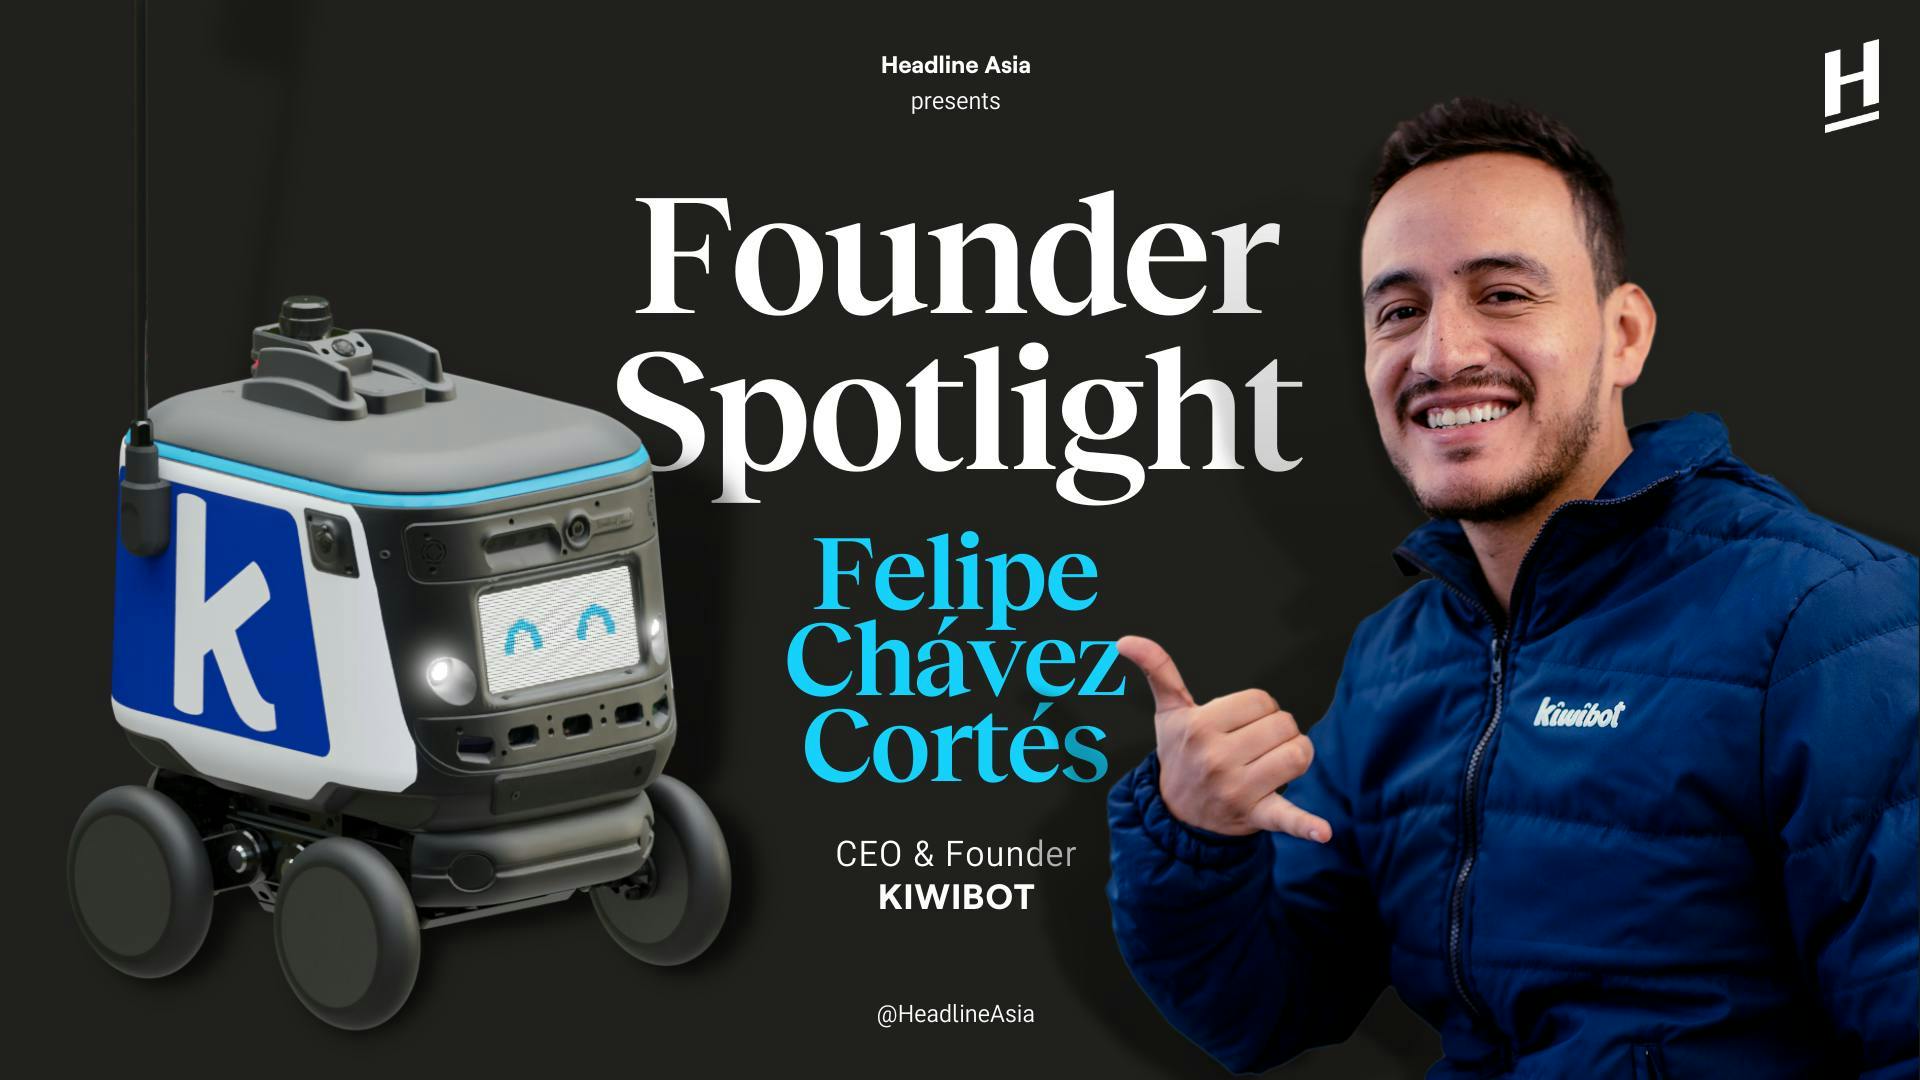 Founder Spotlight of Kiwibot: Felipe Chávez Cortés